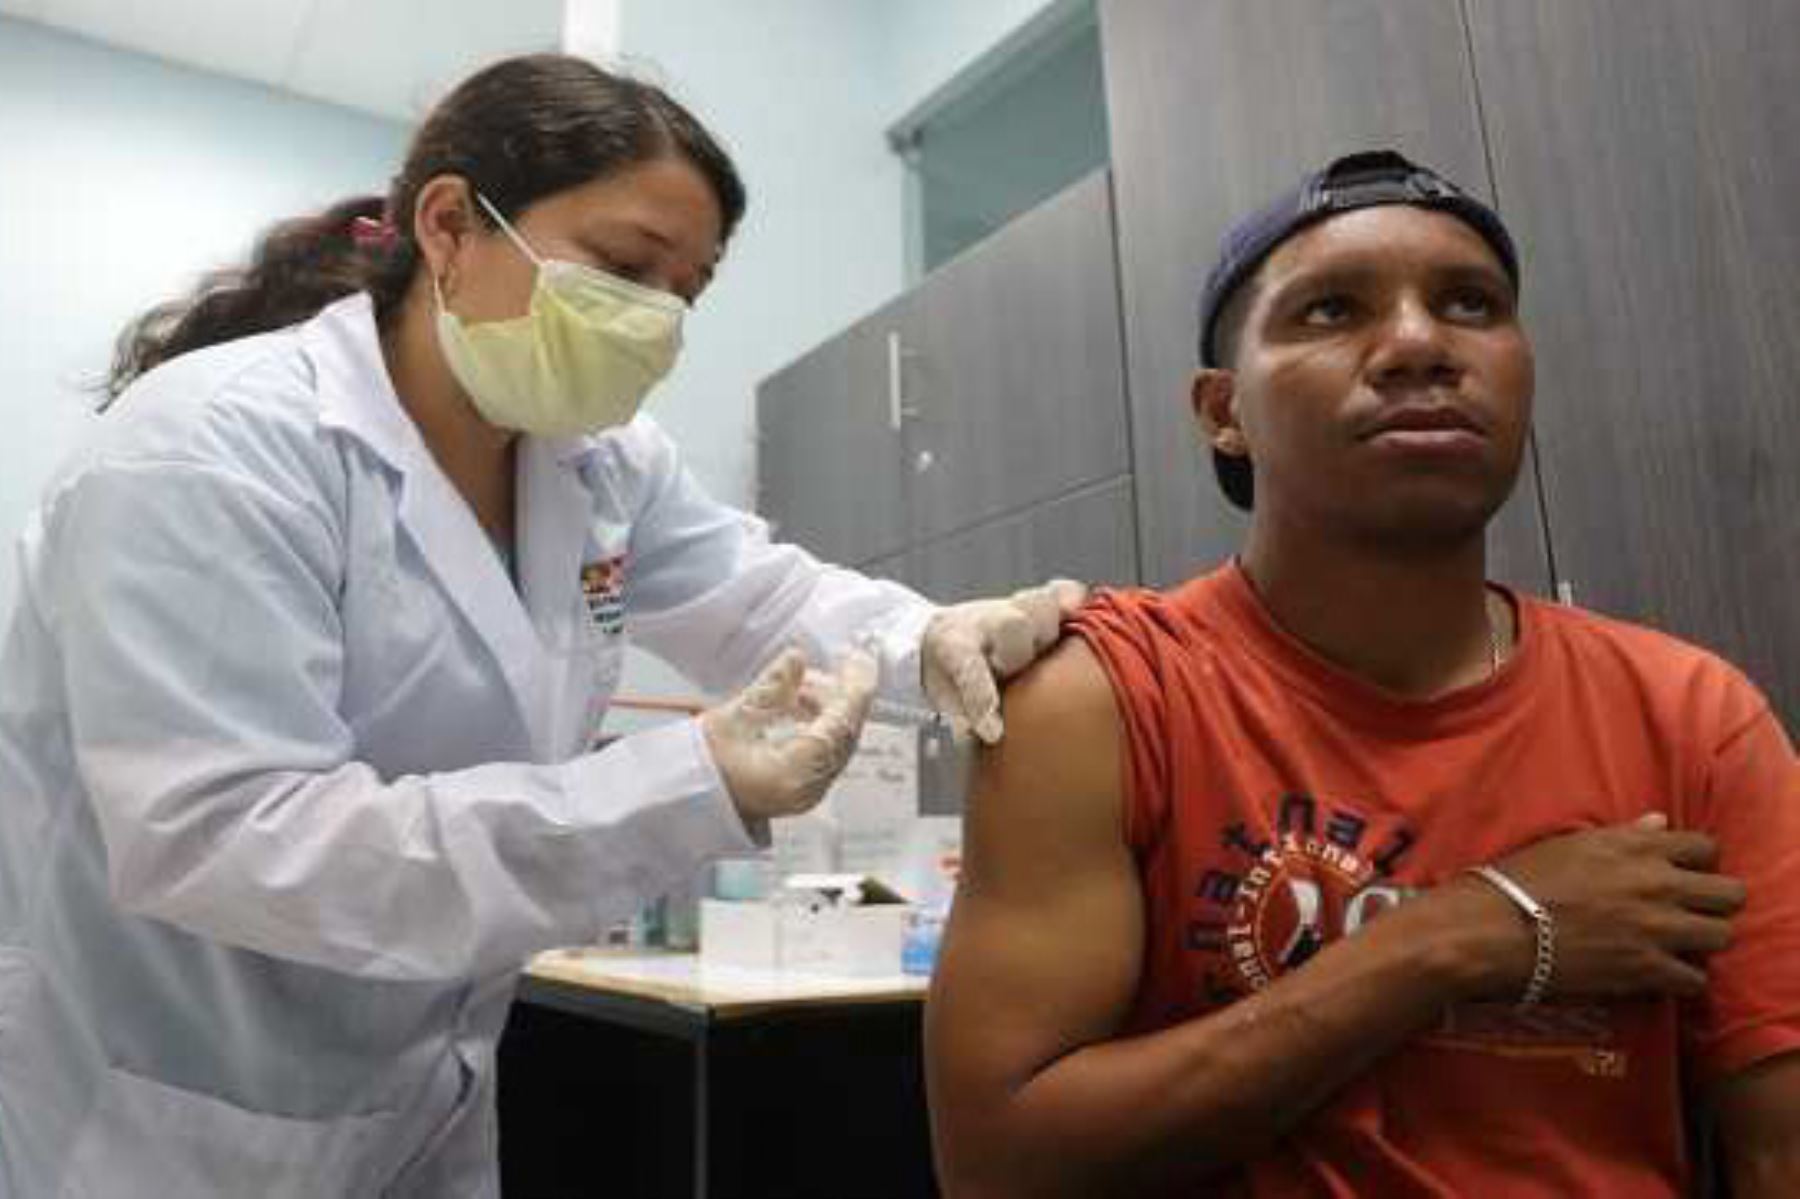 El Ministerio de Salud (Minsa) instaló 17 puestos de vacunación en las zonas de frontera con Ecuador, Colombia, Brasil, Bolivia y Chile para inmunizar a los extranjeros que ingresan al Perú, a fin de reducir los riesgos de contagio y propagación de enfermedades en nuestro territorio.